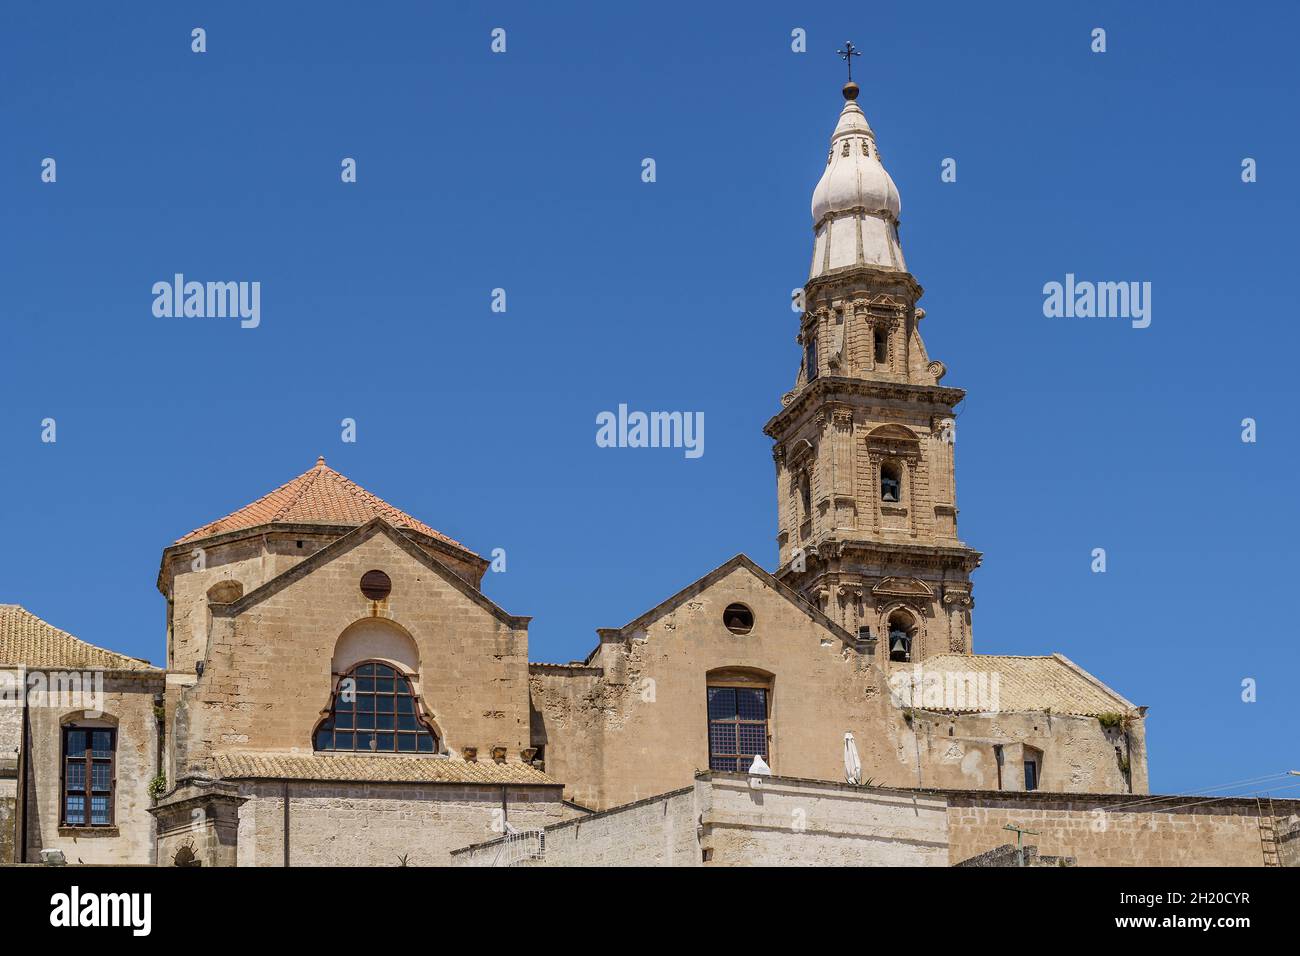 The bell tower of Cathedral Basilica of Maria Santissima della Madia in the historic center of Monopoli, Bari, Puglia, Italy. Stock Photo